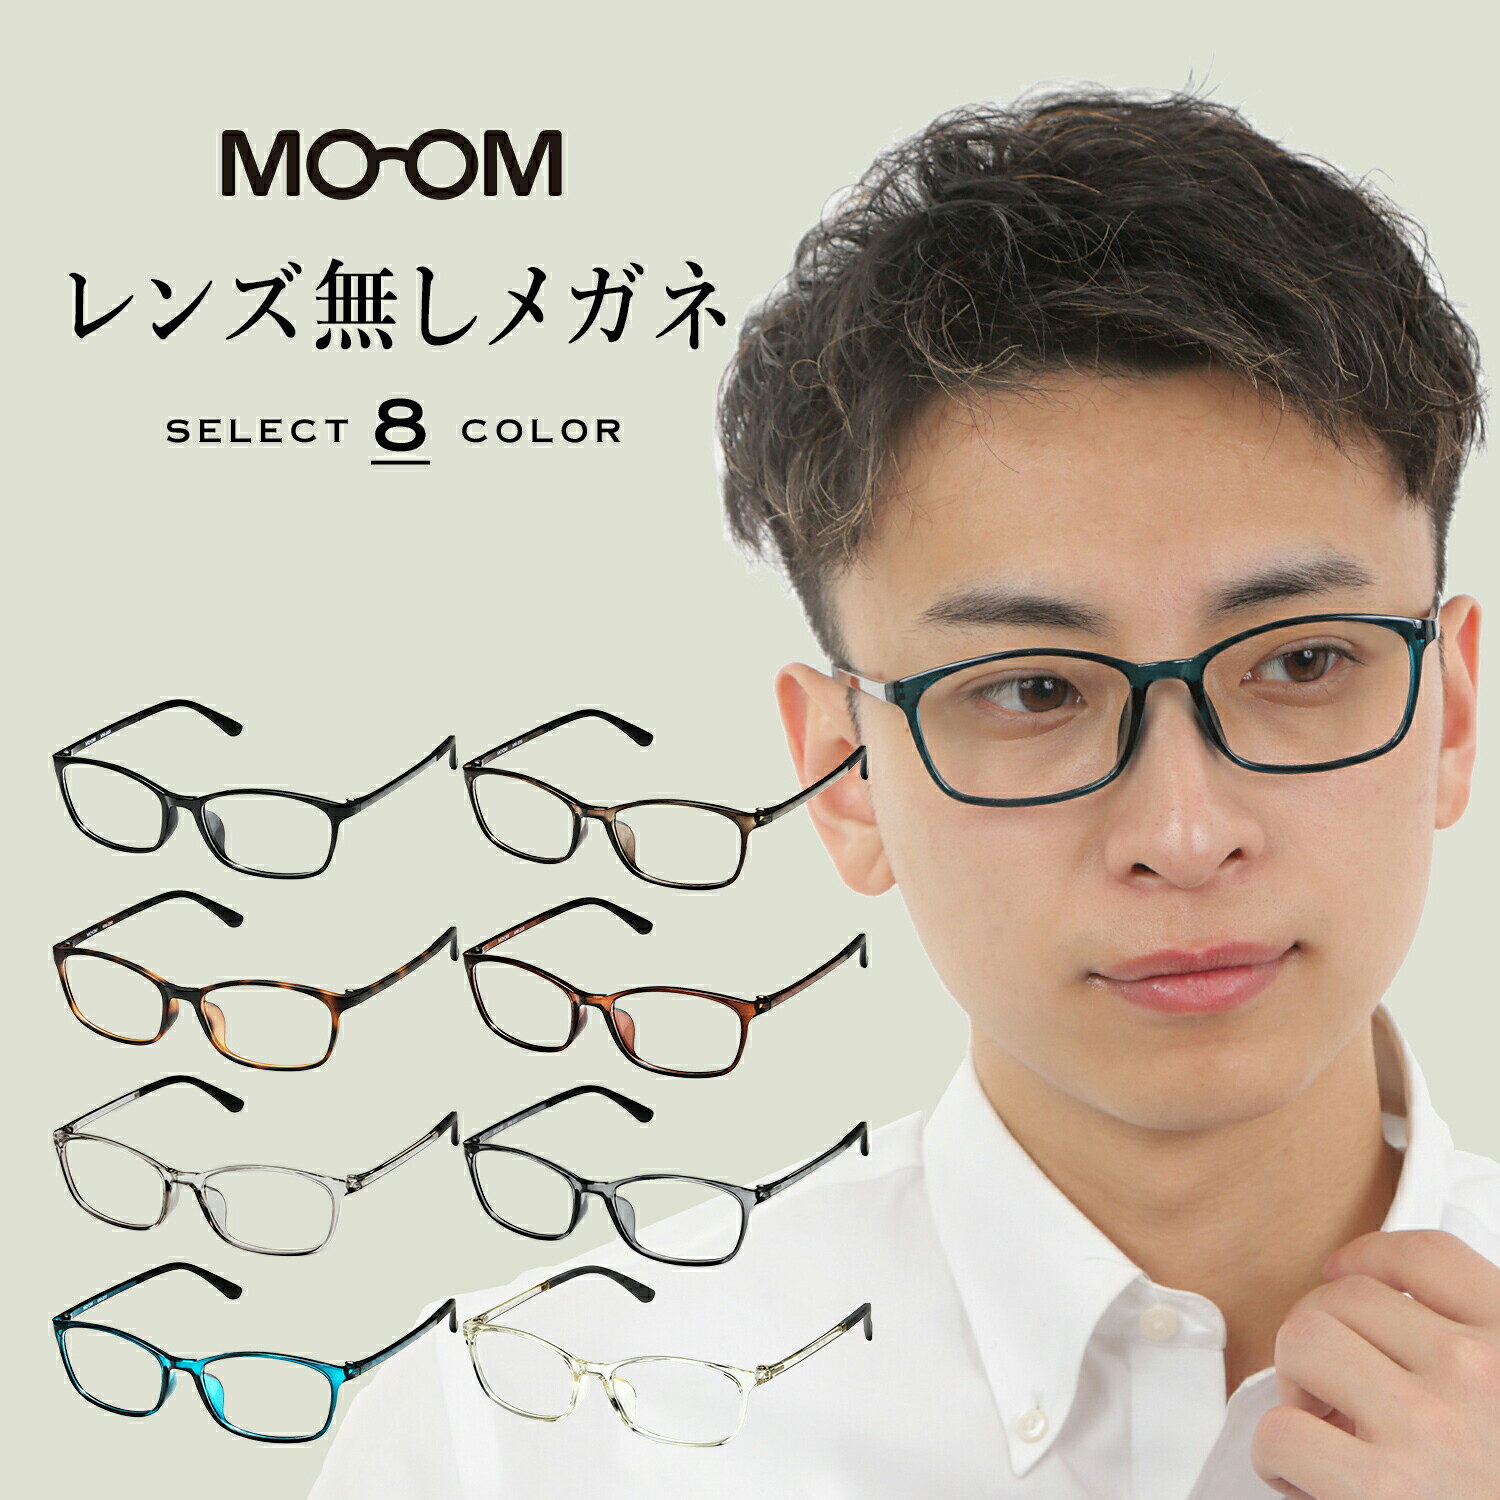 MOOM レンズなしメガネ メンズ 男性 フレーム おしゃれ レンズなし眼鏡 伊達メガネ だてメガネ レンズなし メガネフレーム ファッションメガネ スクエア かっこいい 細い MM-200-Lensless